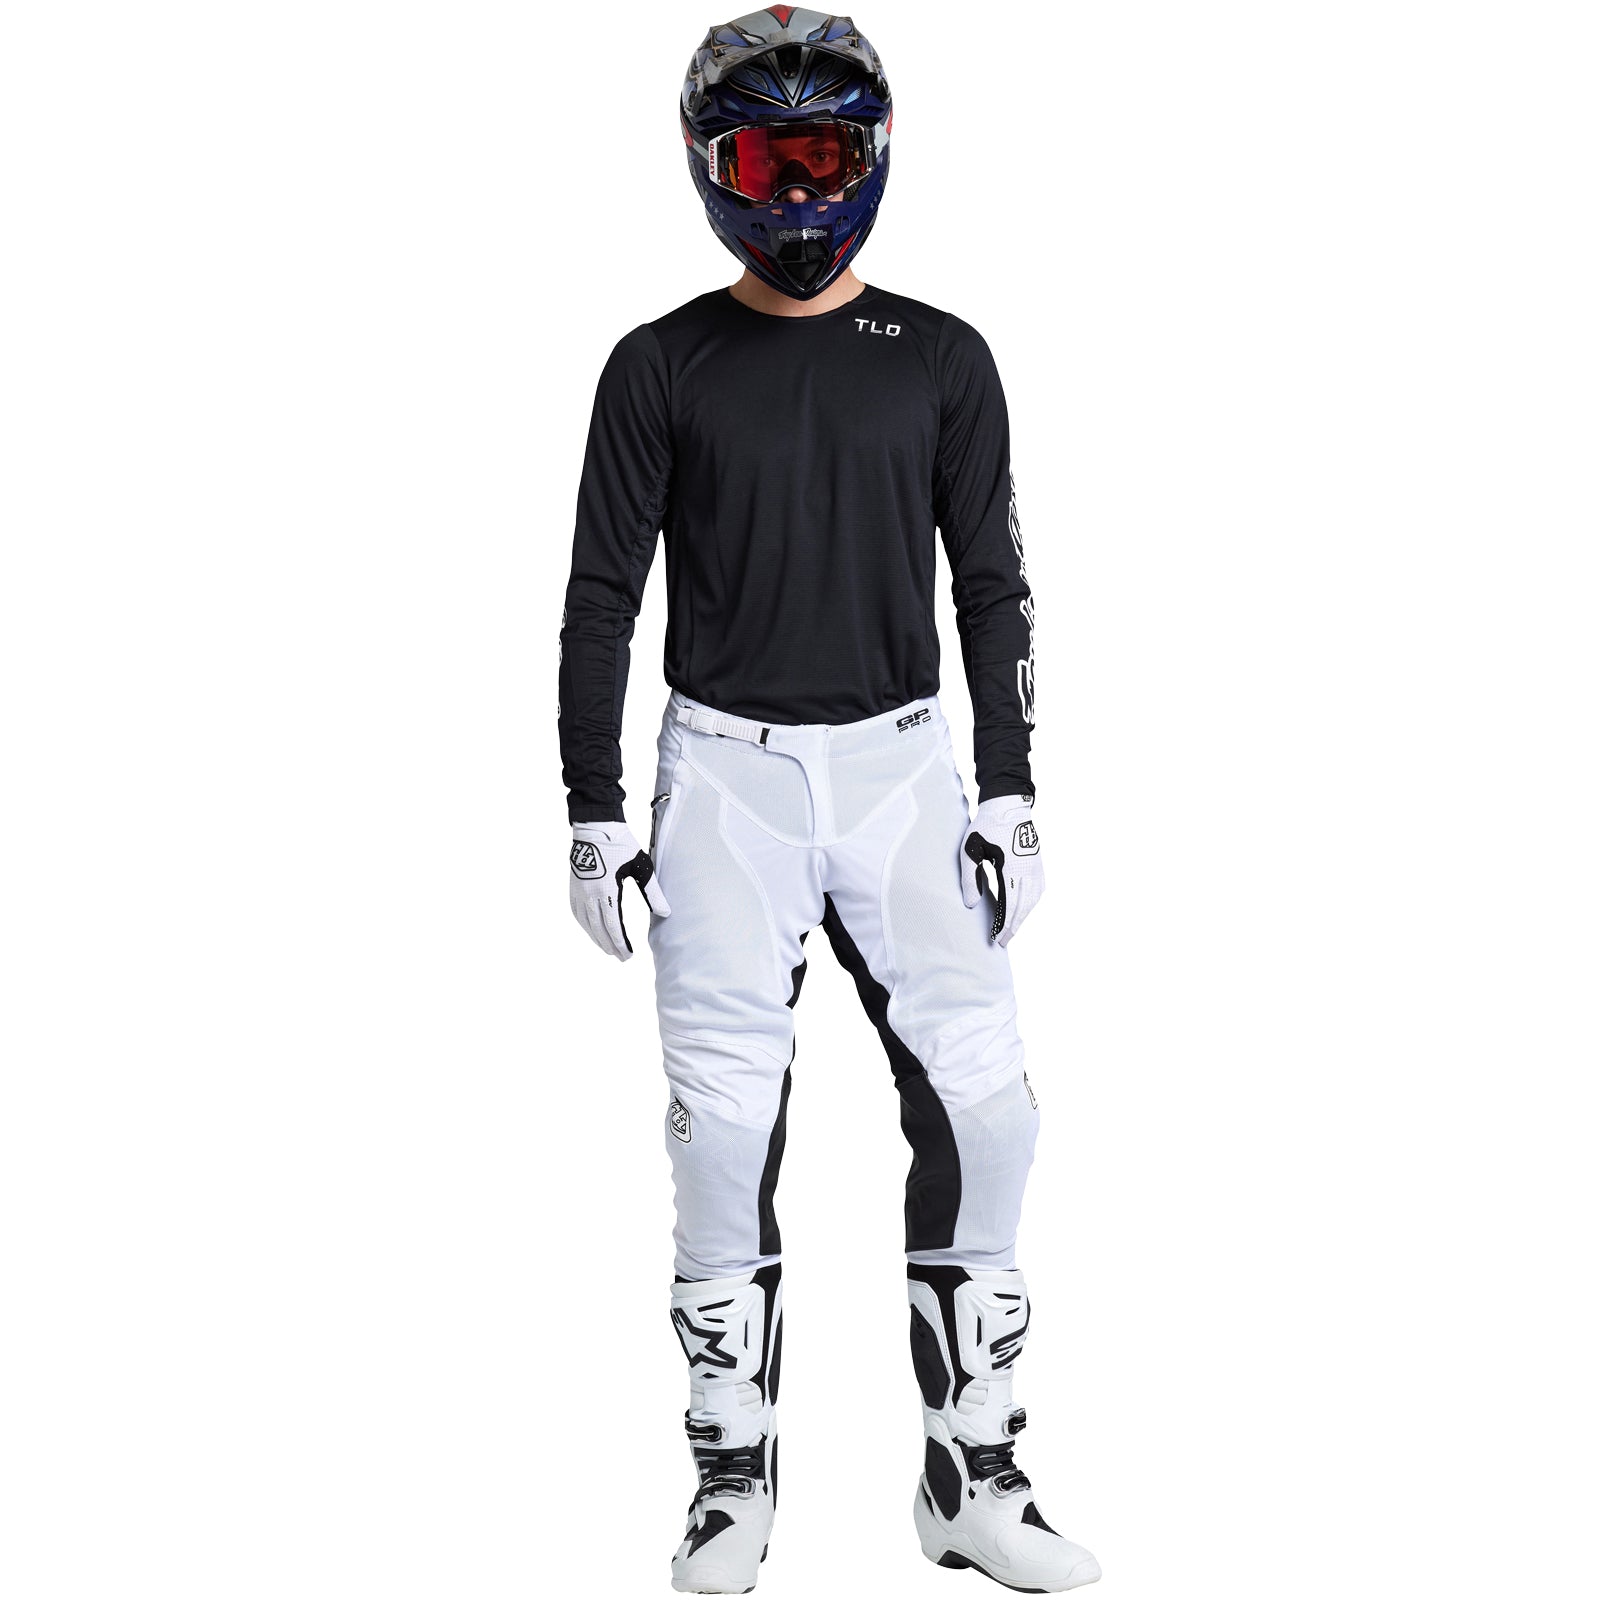 GP Pro Air Pant Mono White – Troy Lee Designs